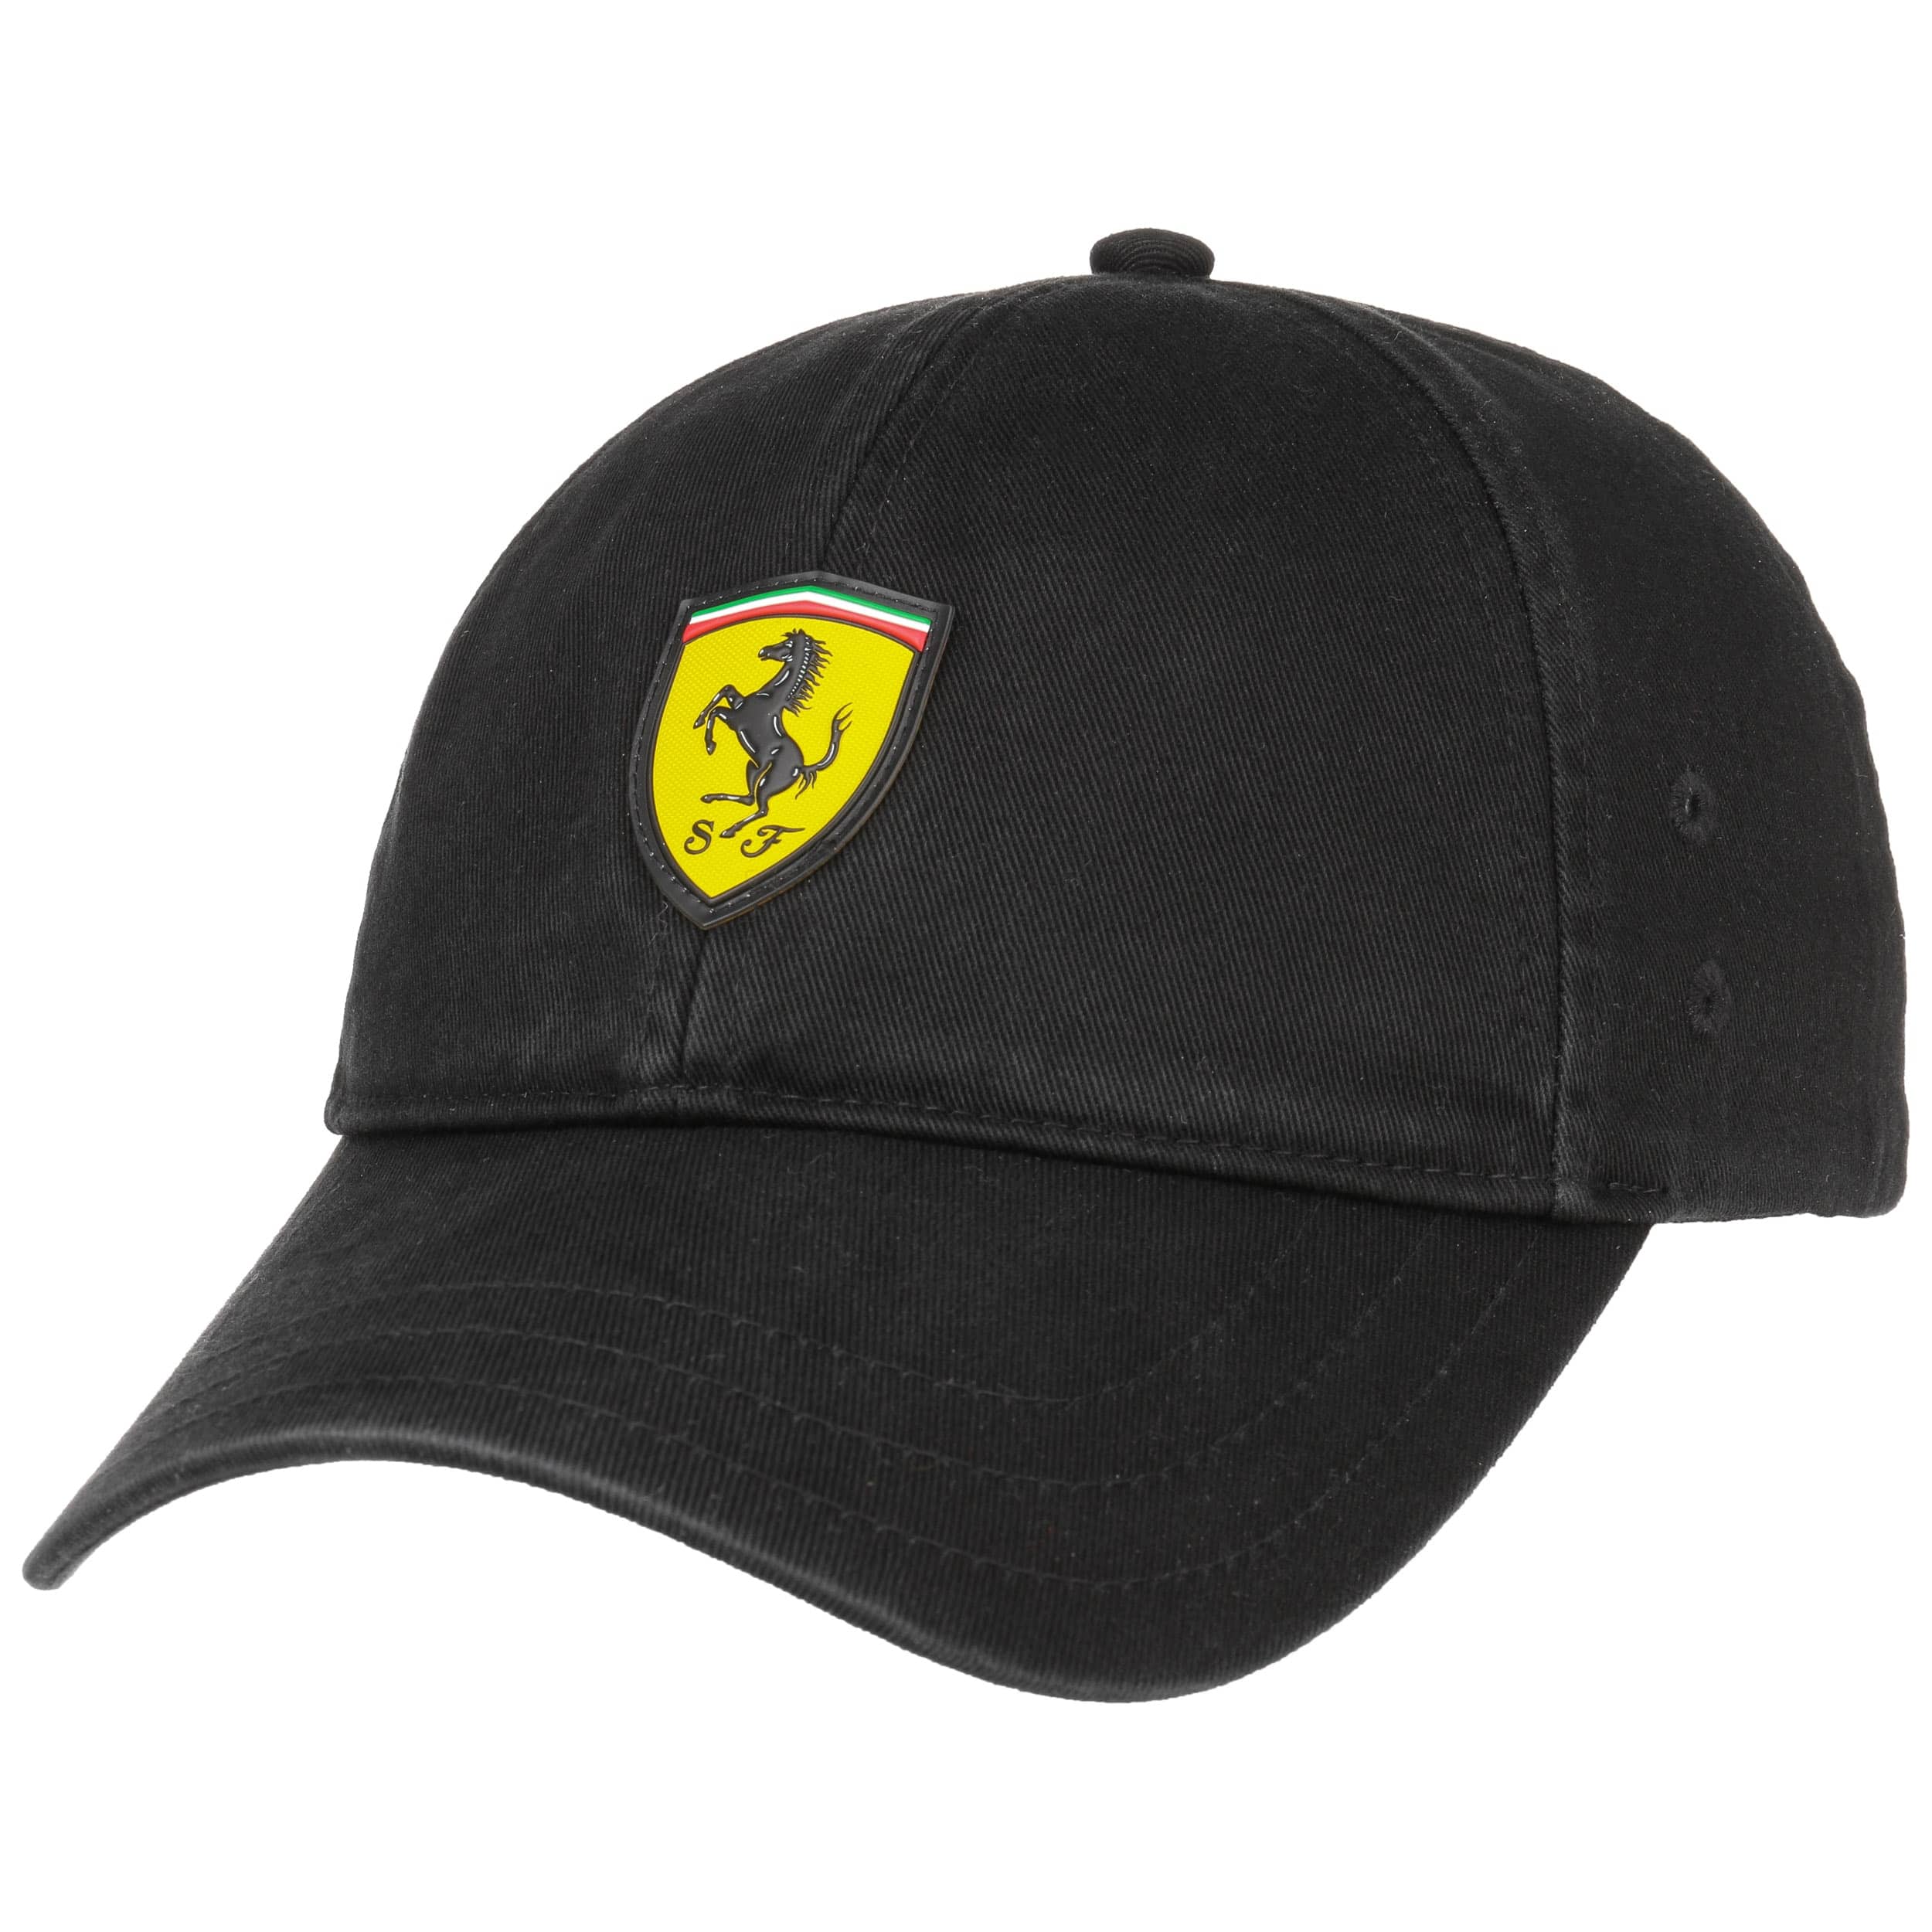 Casquette Ferrari Uomo Accessori Cappelli e berretti Berretti Ferrari Berretti 